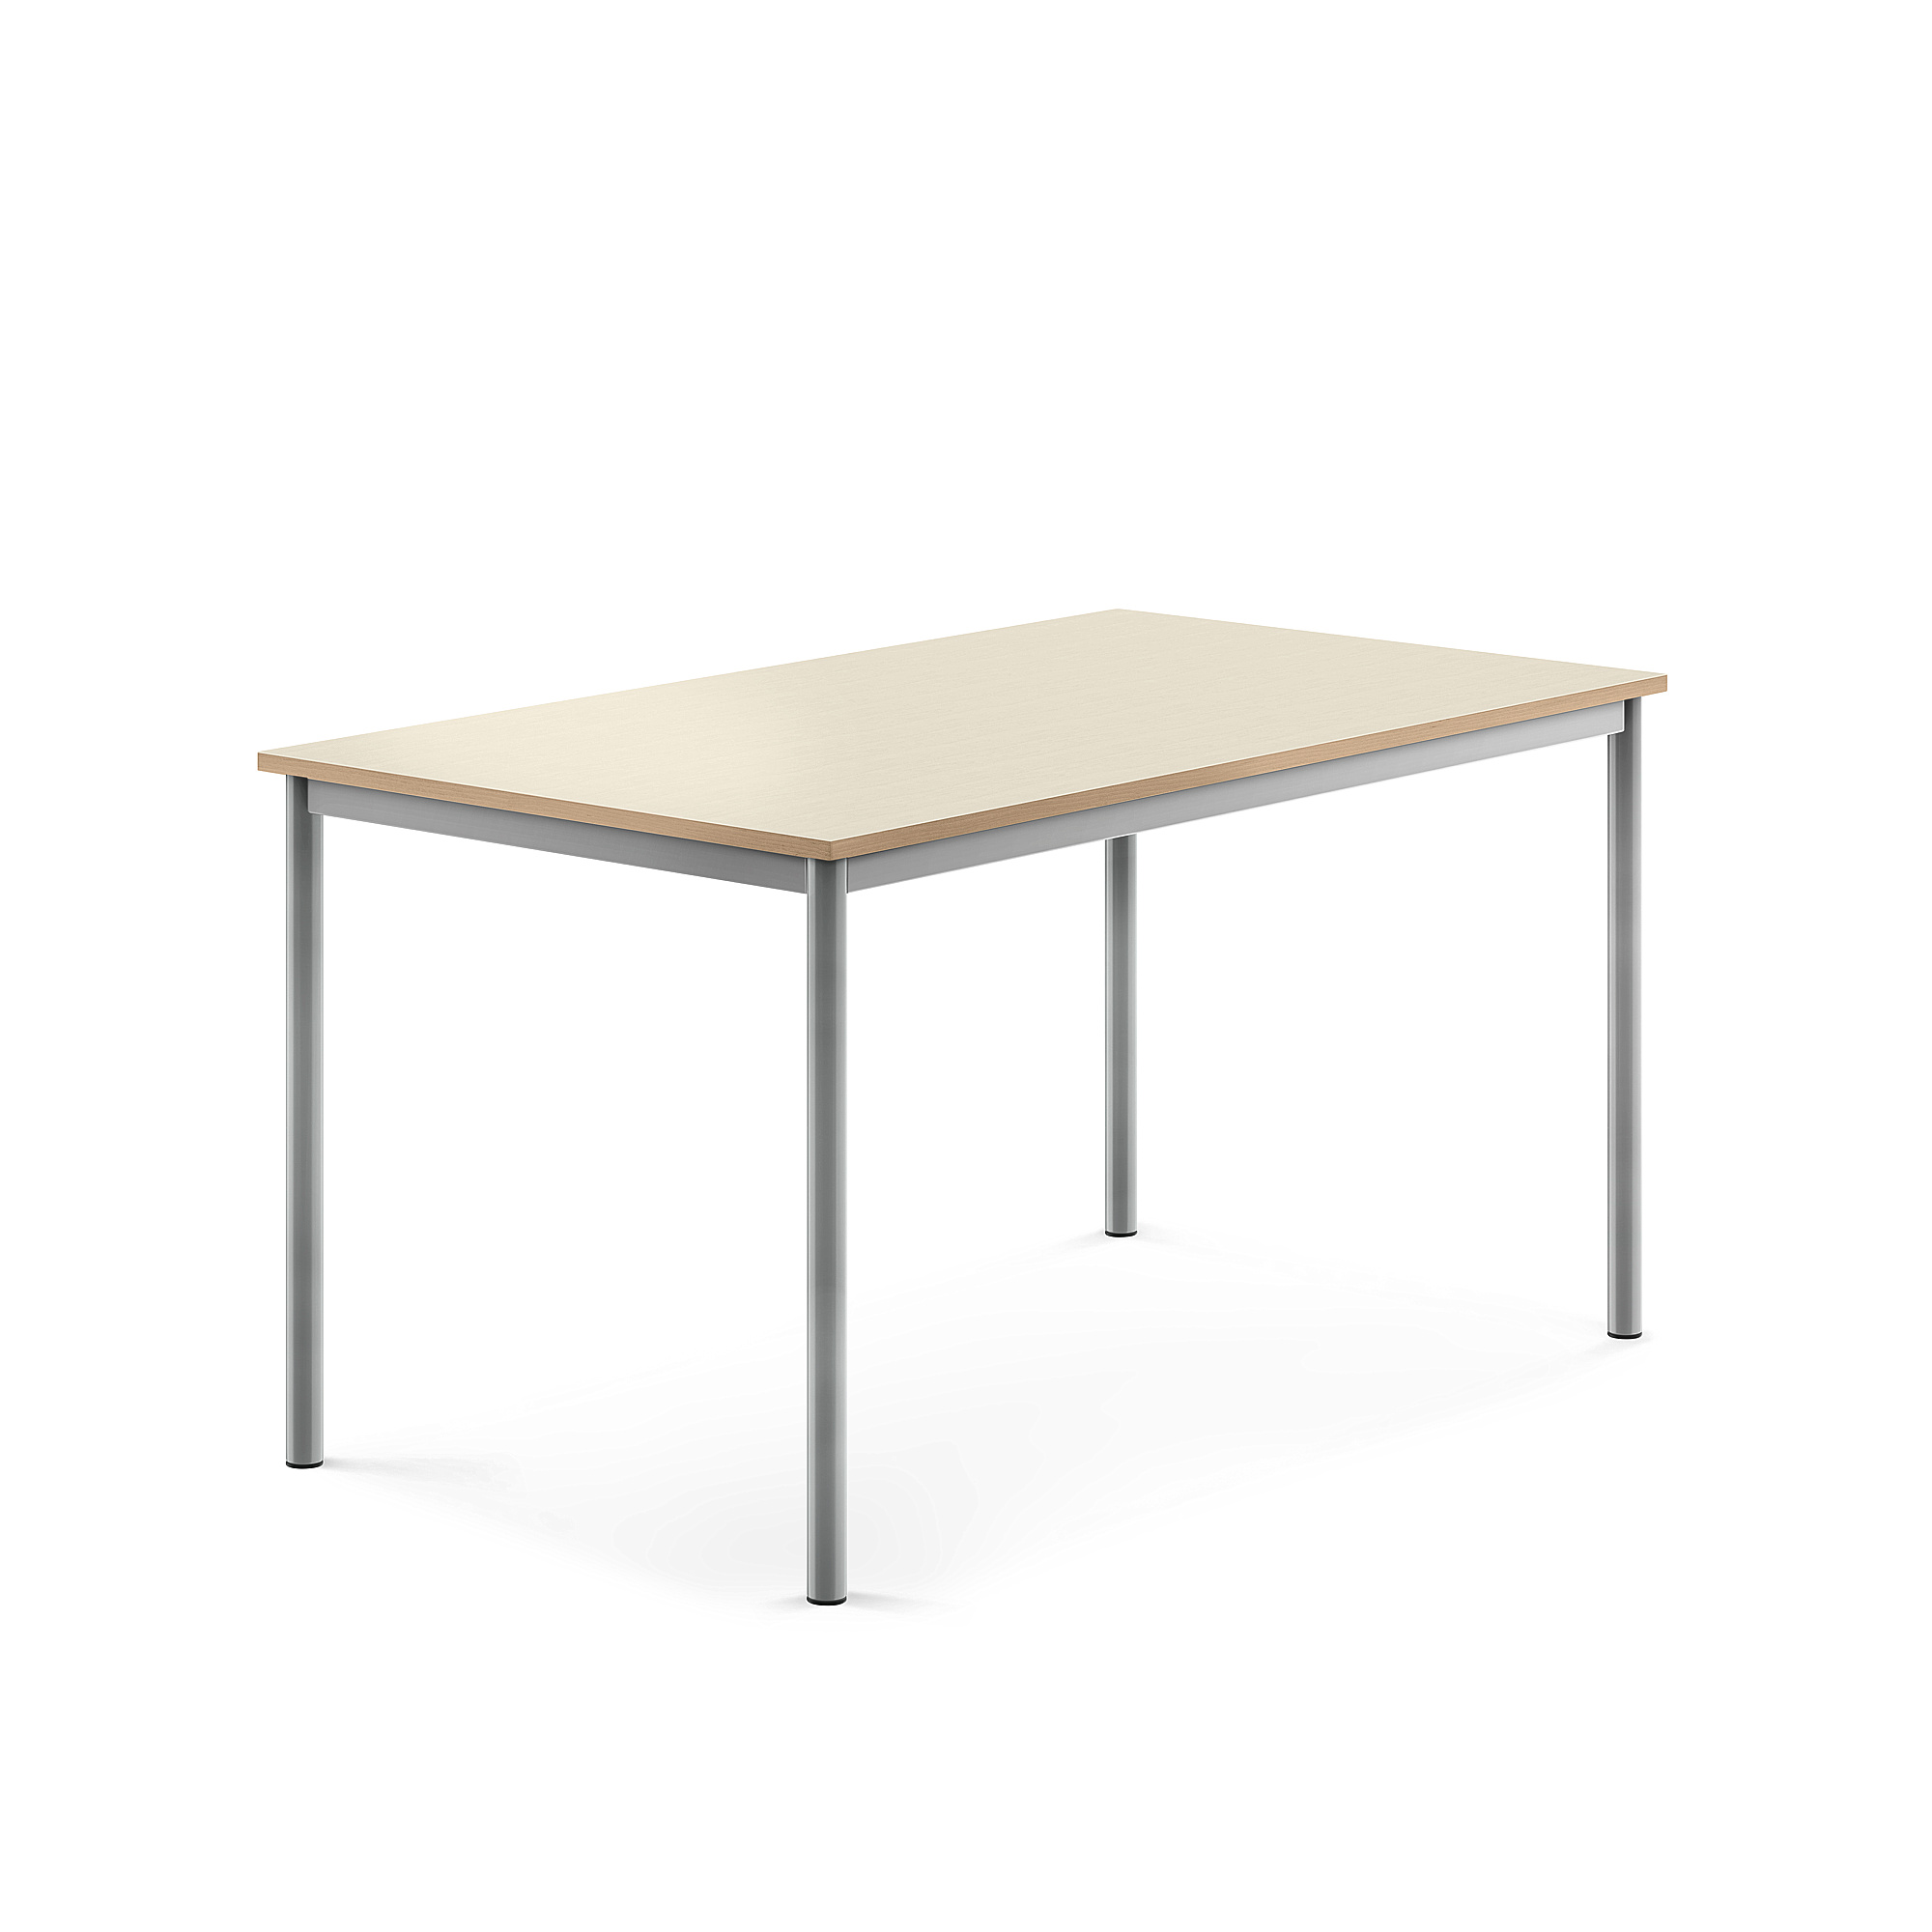 Stůl BORÅS, 1400x800x720 mm, stříbrné nohy, HPL deska, bříza